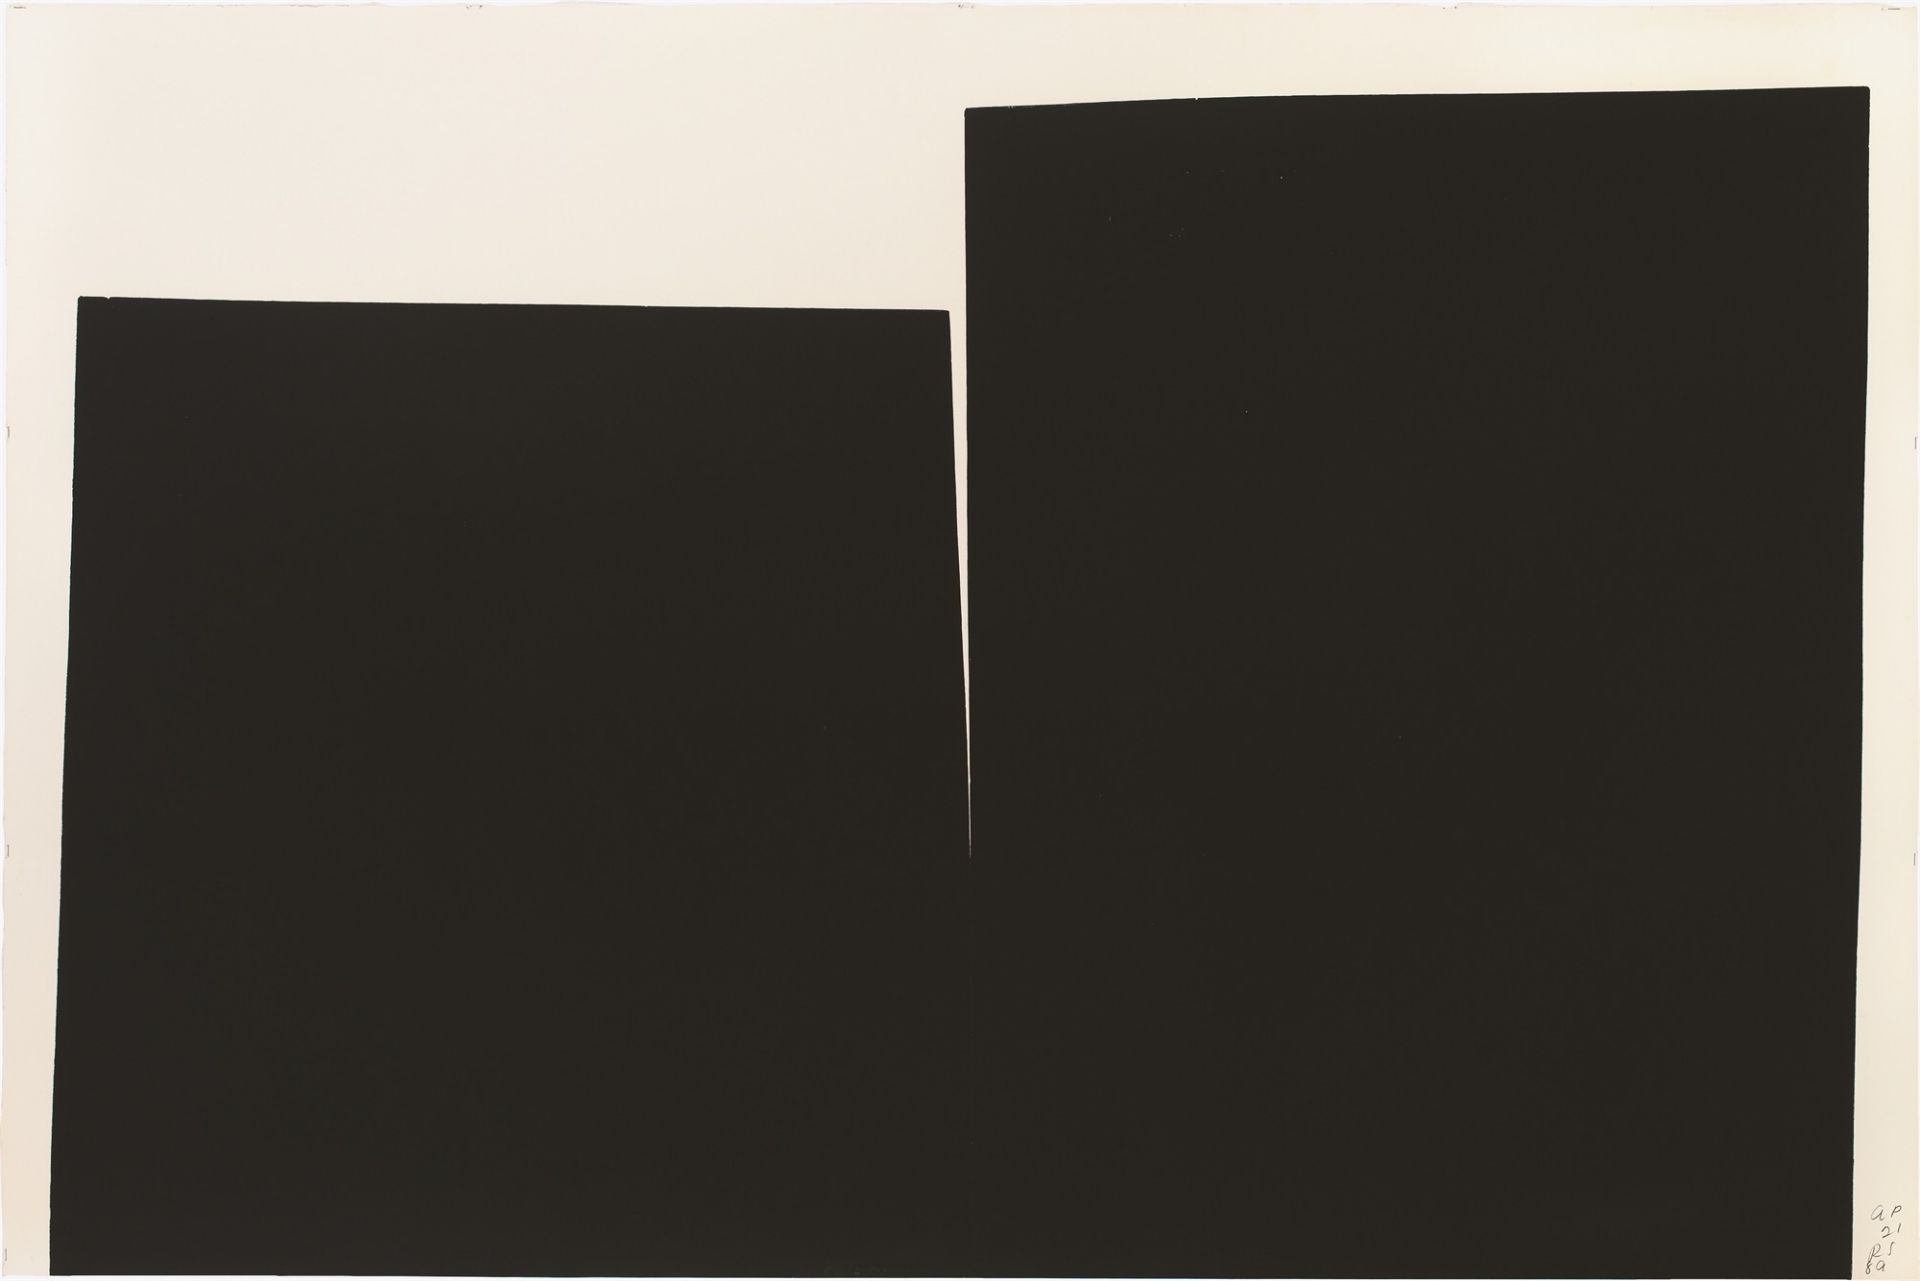 Richard Serra. ”Vive La Vive La”. 1989